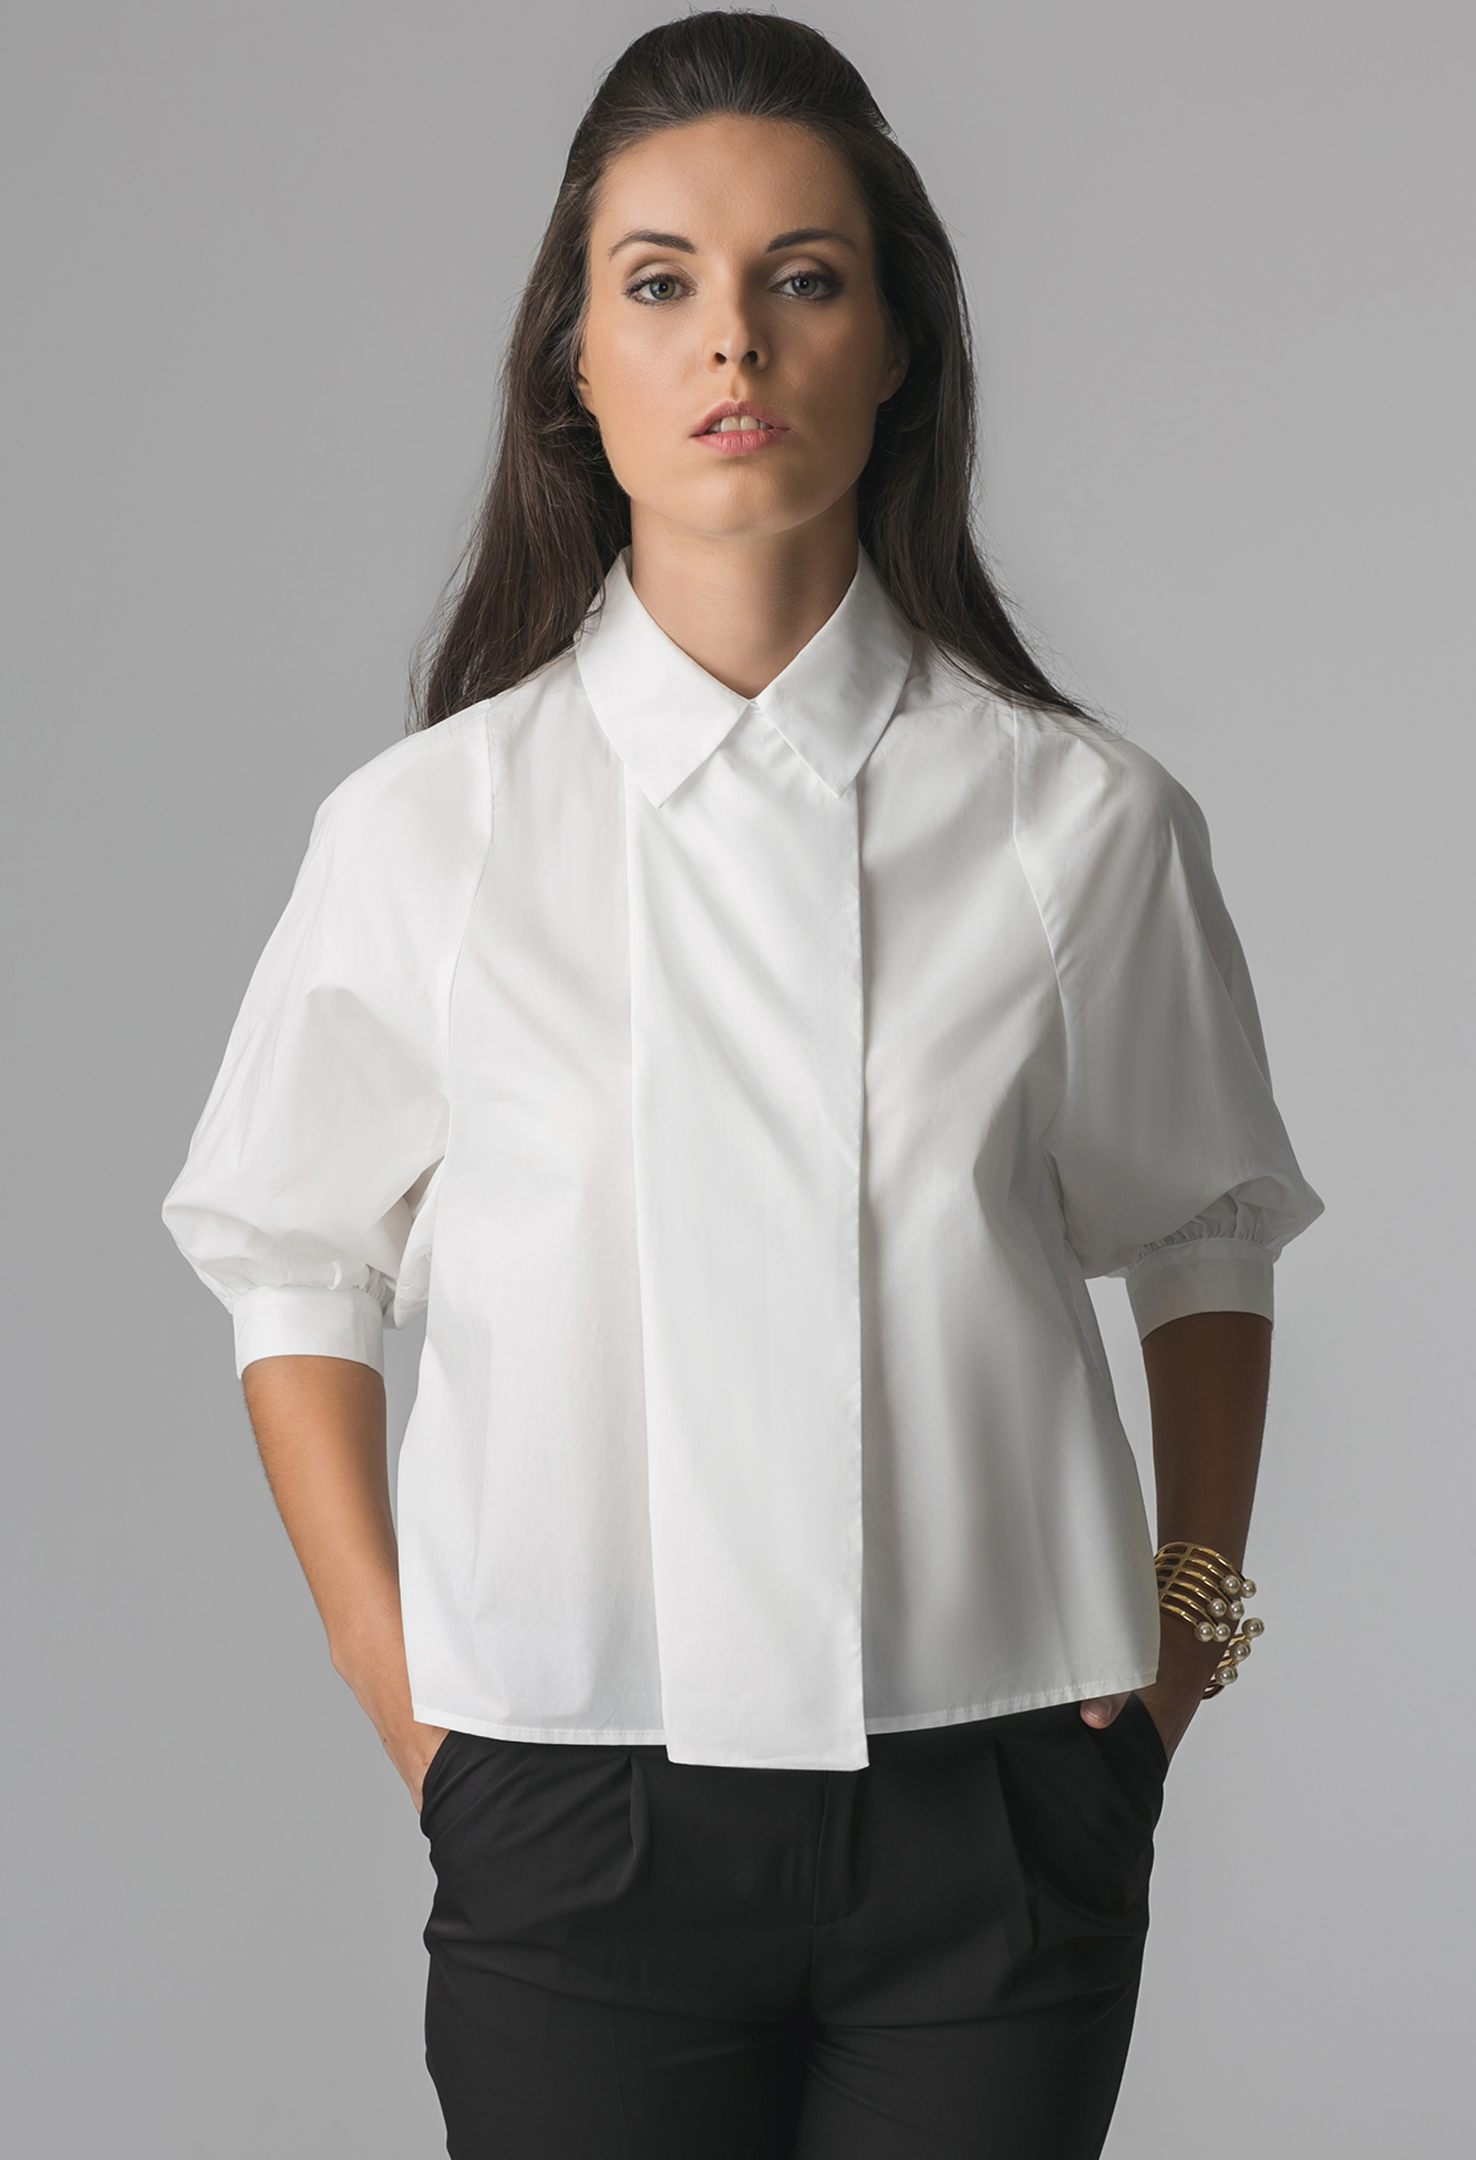 Блузка для офиса. Рубашки женские стильные. Белая блузка. Женщина в блузке. Необычные рубашки женские.